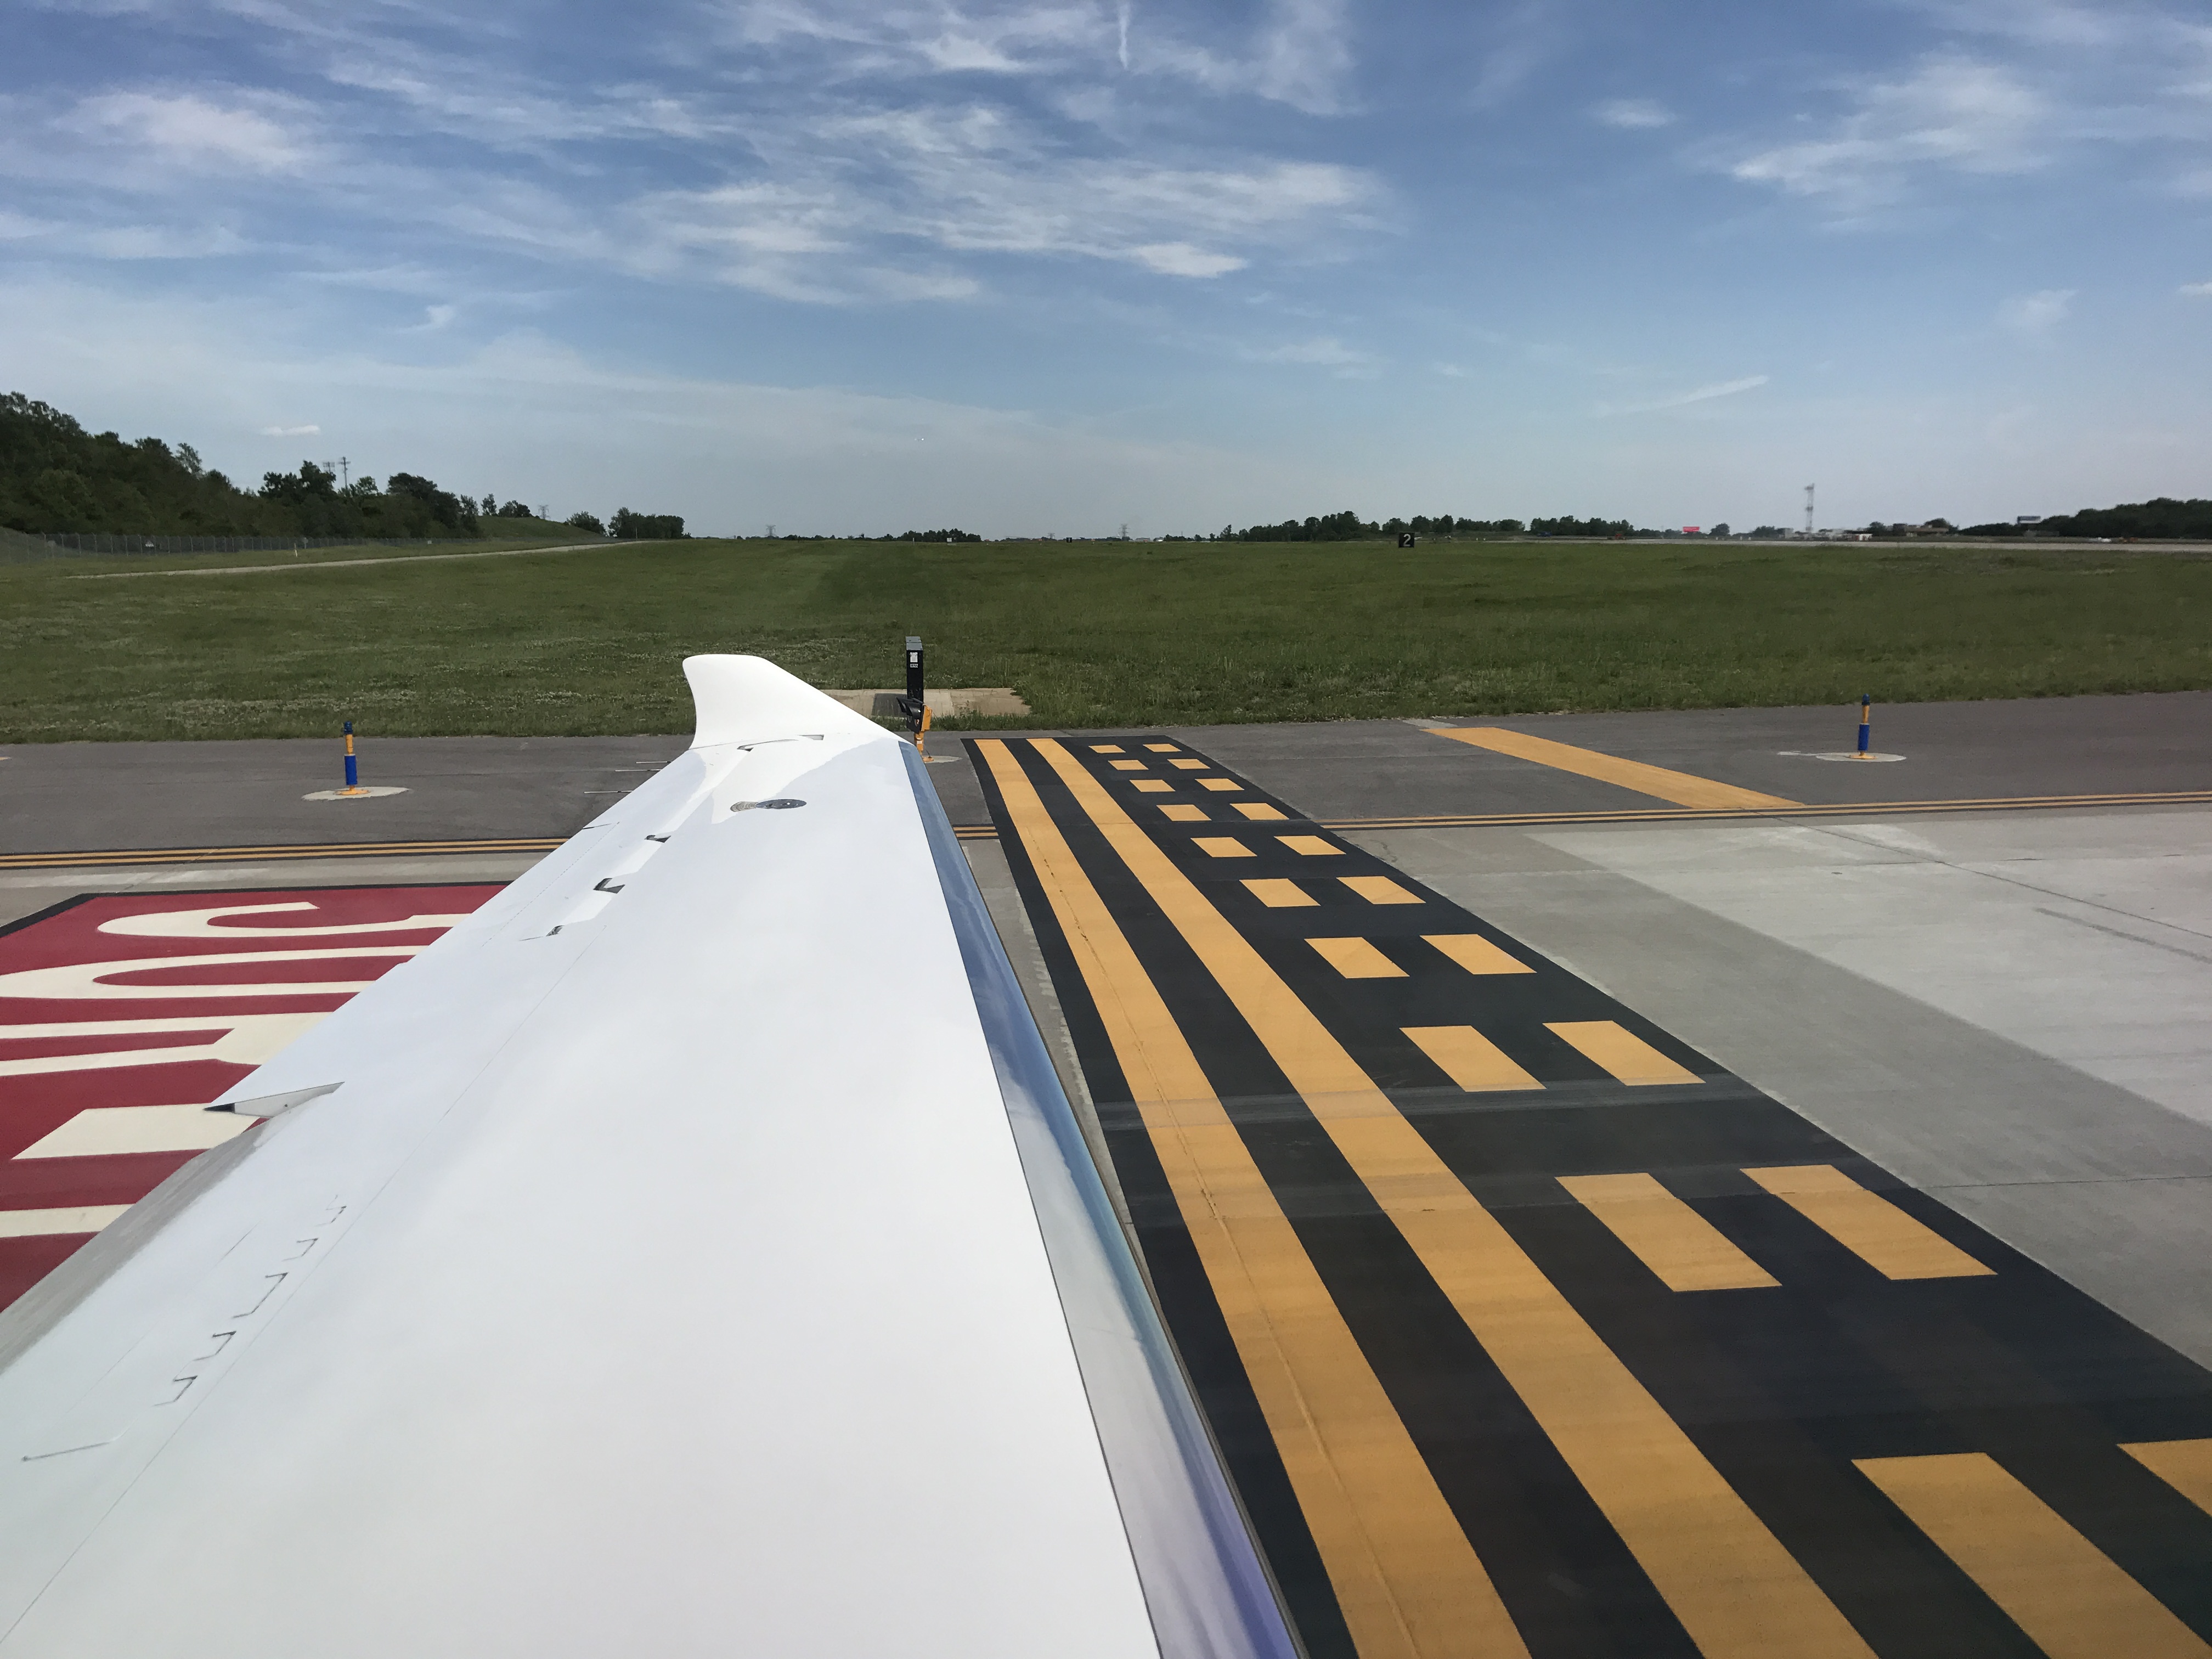 Crossing the runway at Lambert Airport